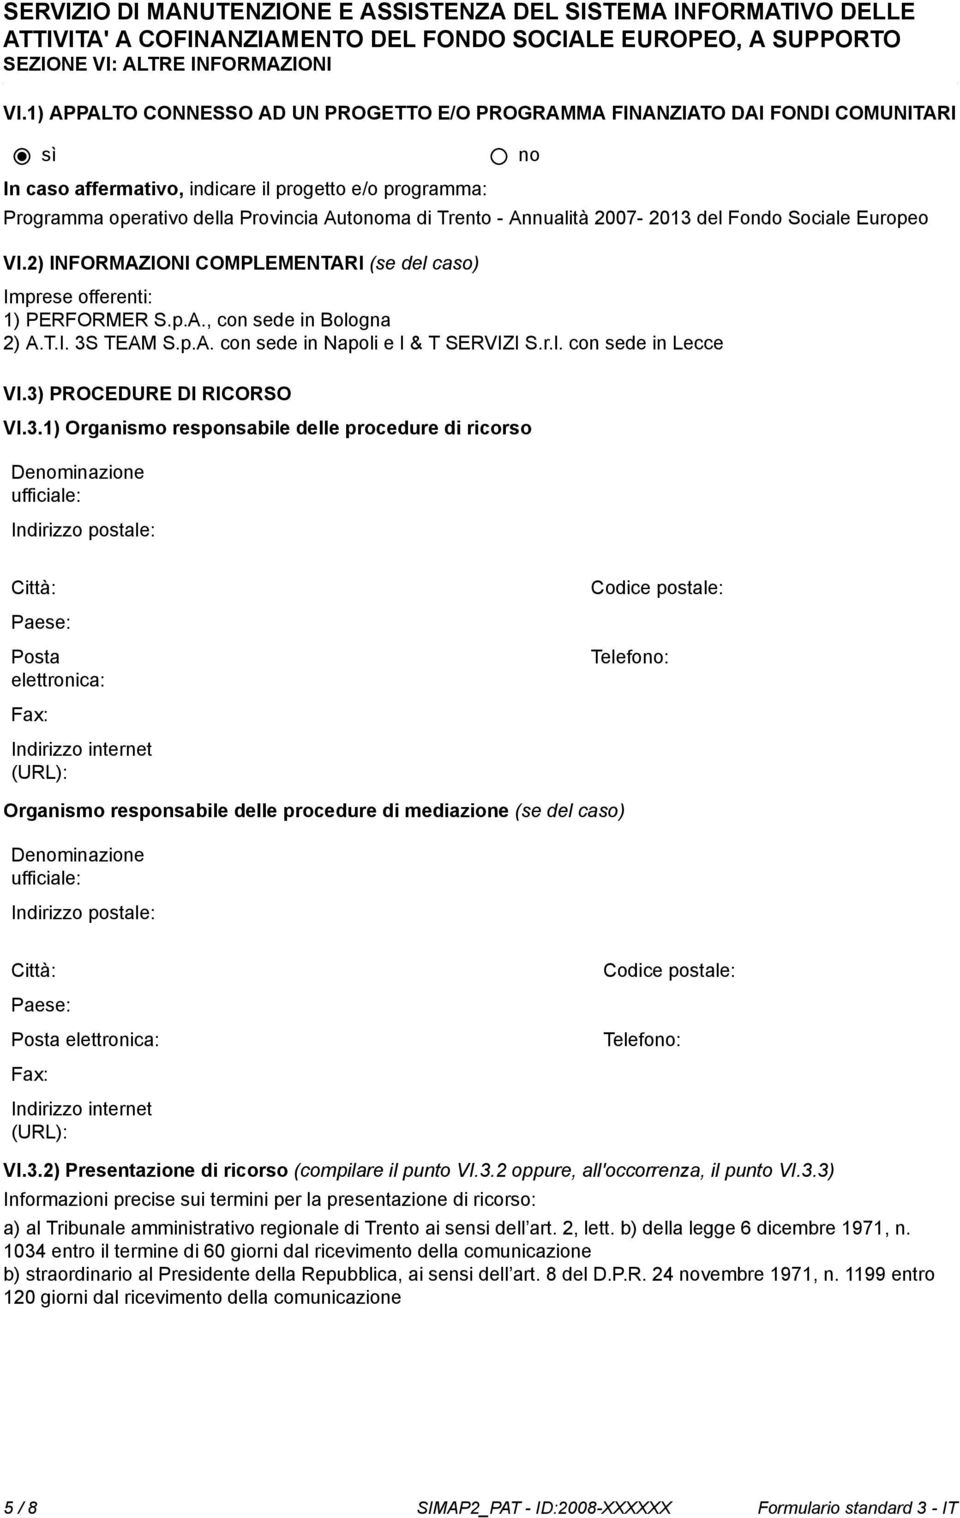 Annualità 2007-2013 del Fondo Sociale Europeo VI.2) INFORMAZIONI COMPLEMENTARI (se del caso) Imprese offerenti: 1) PERFORMER S.p.A., con sede in Bologna 2) A.T.I. 3S TEAM S.p.A. con sede in Napoli e I & T SERVIZI S.